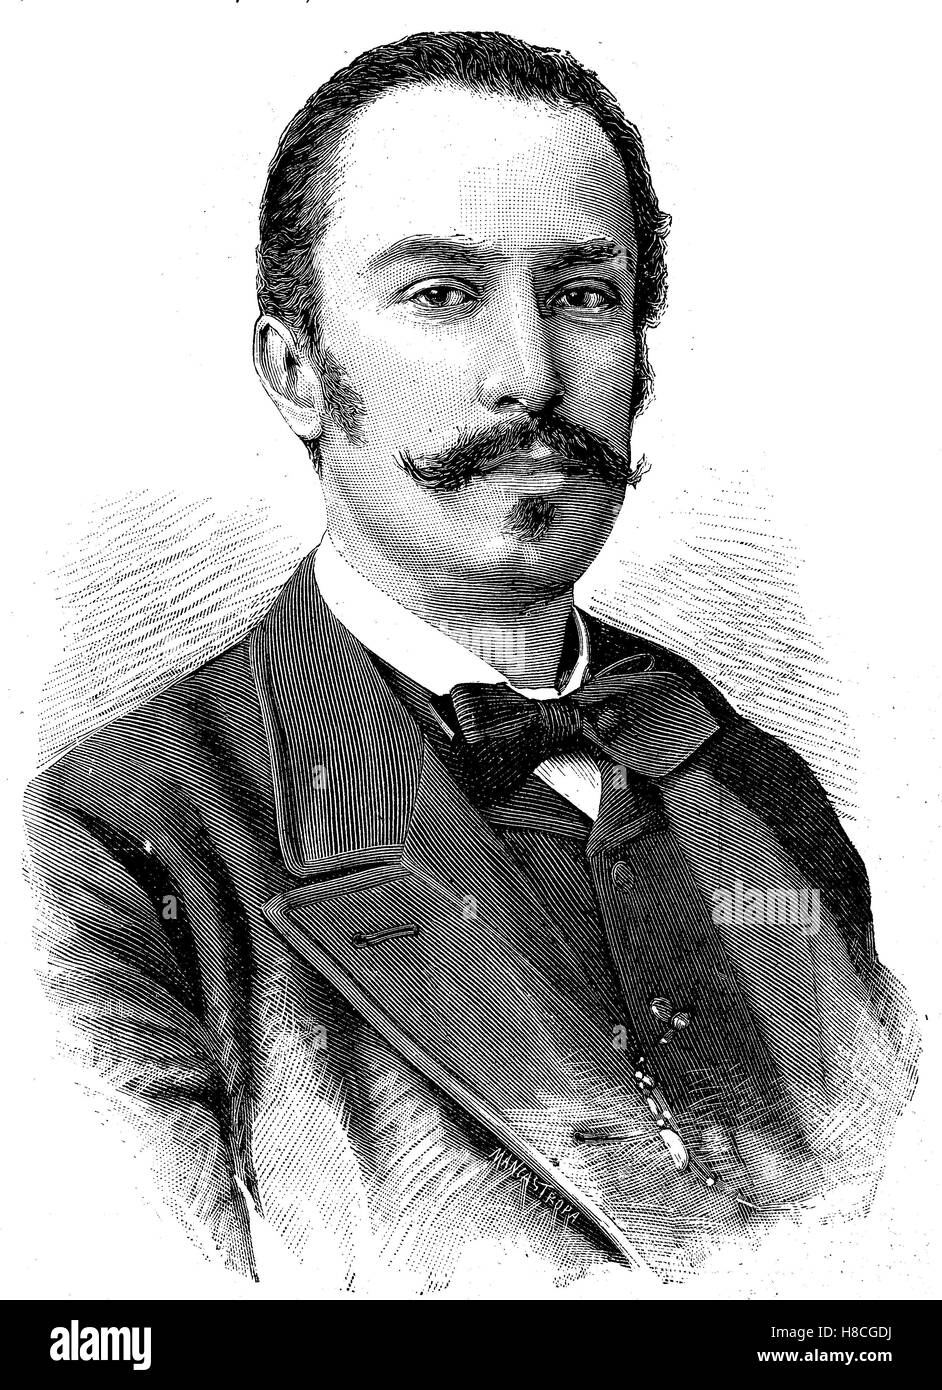 Giovanni Giolitti ; 27 octobre 1842 - Le 17 juillet 1928, était un homme d'État italien. Il a été le premier ministre de l'Italie à cinq reprises entre 1892 et 1921, gravure sur bois de 1892 Banque D'Images